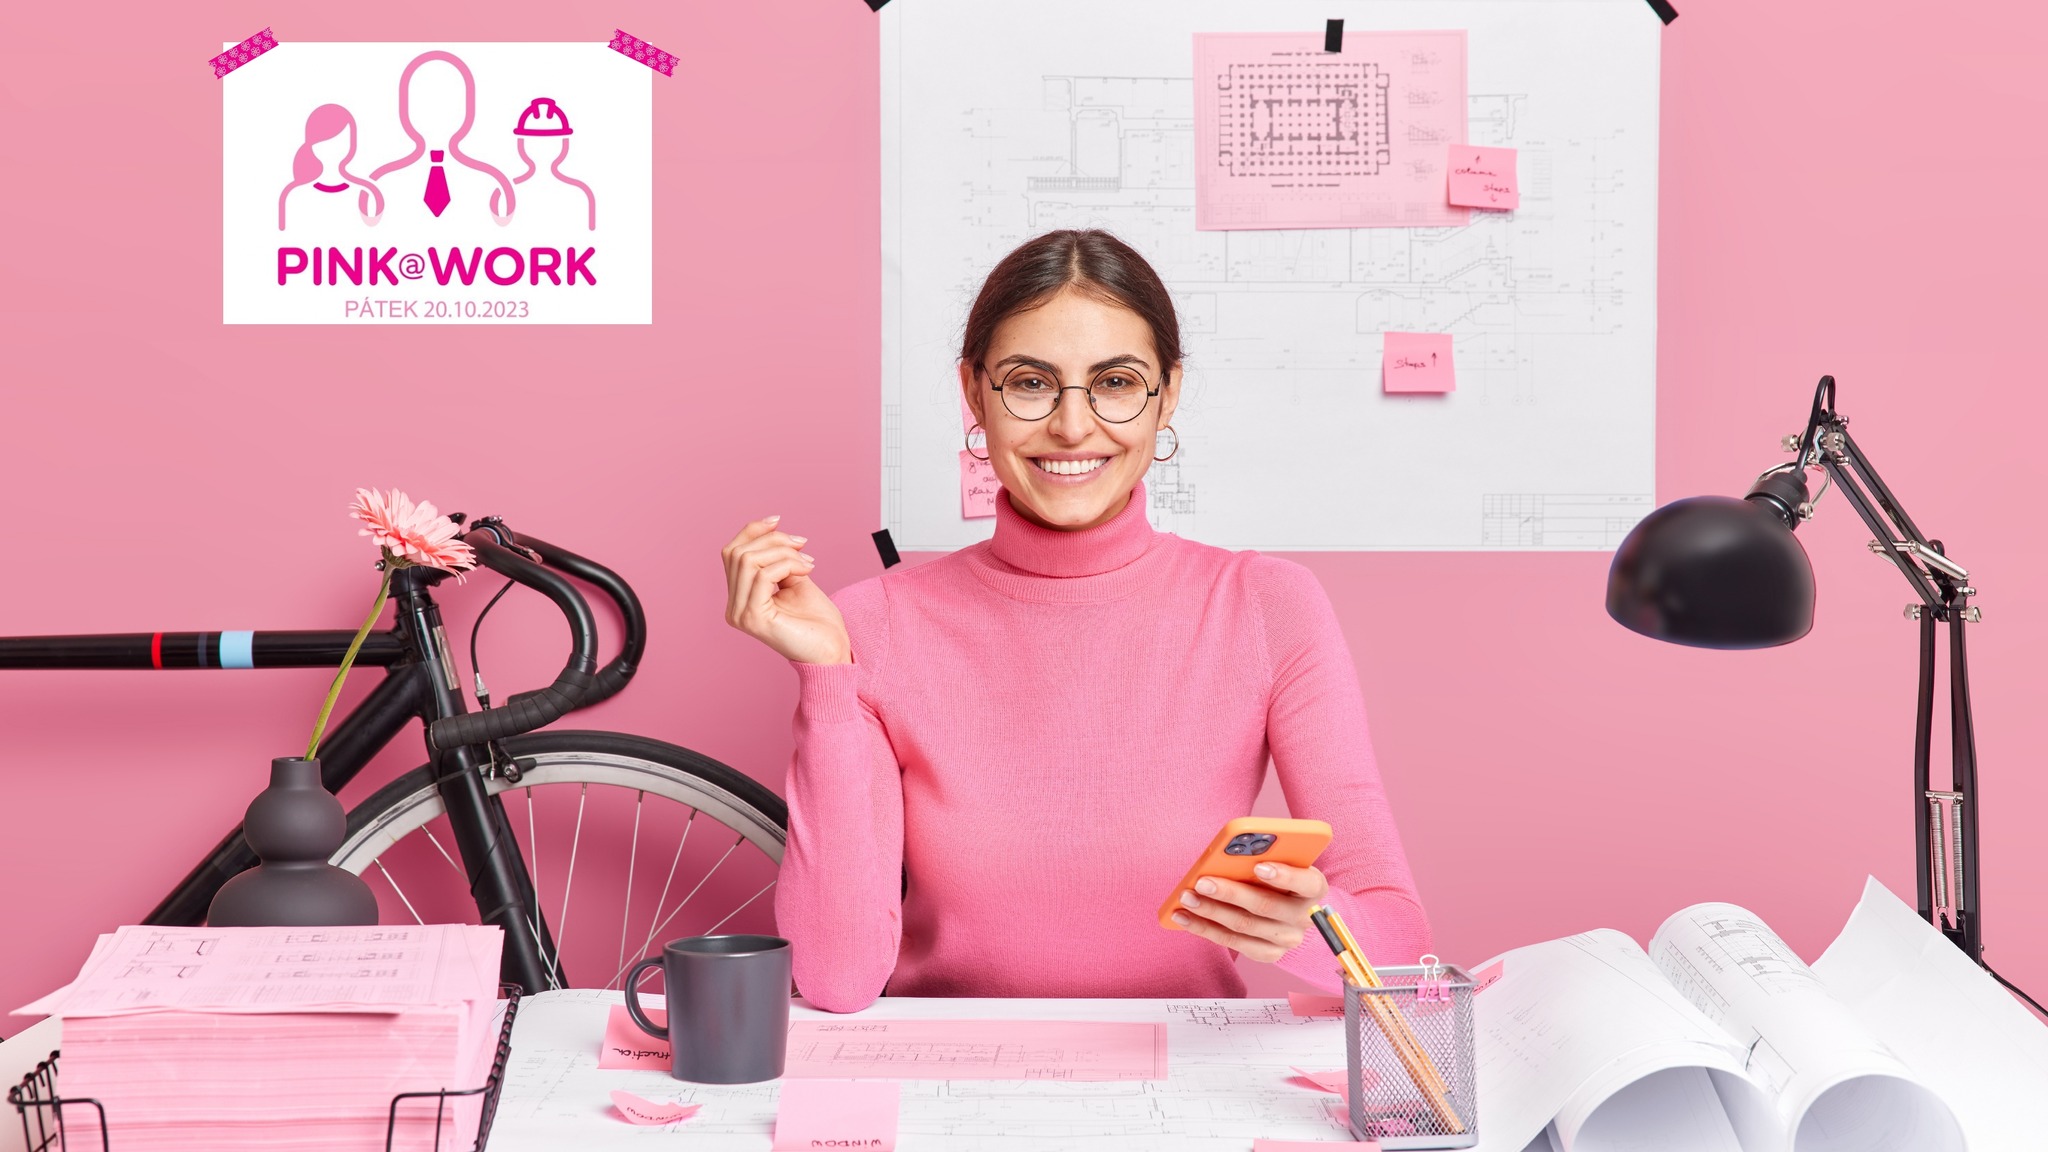 PINK@WORK již zítra (pátek 20. října) aneb všichni společně do práce v růžové